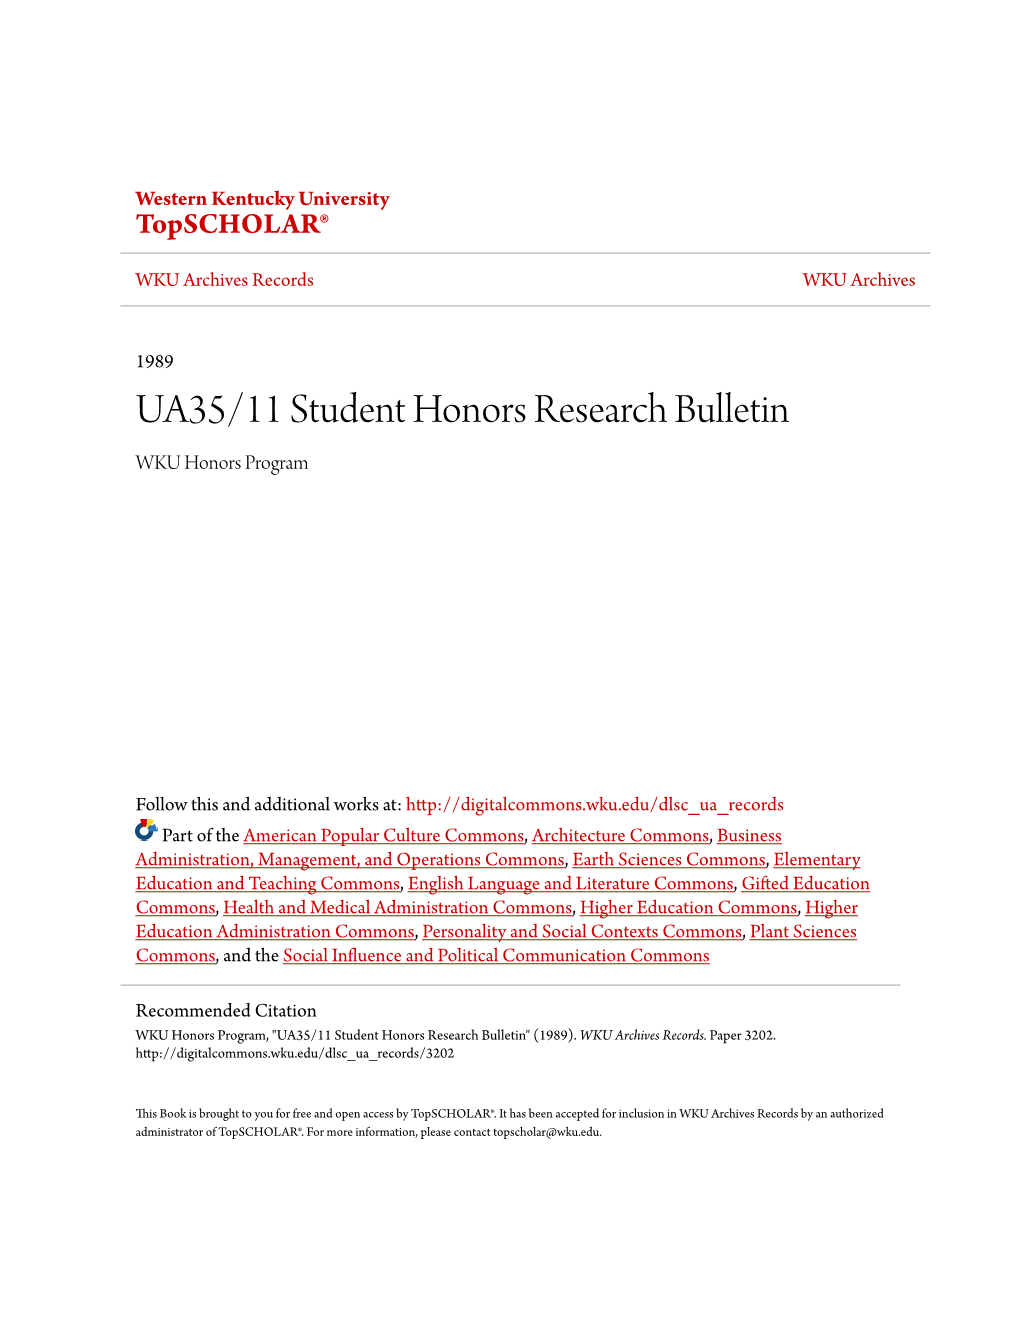 UA35/11 Student Honors Research Bulletin WKU Honors Program